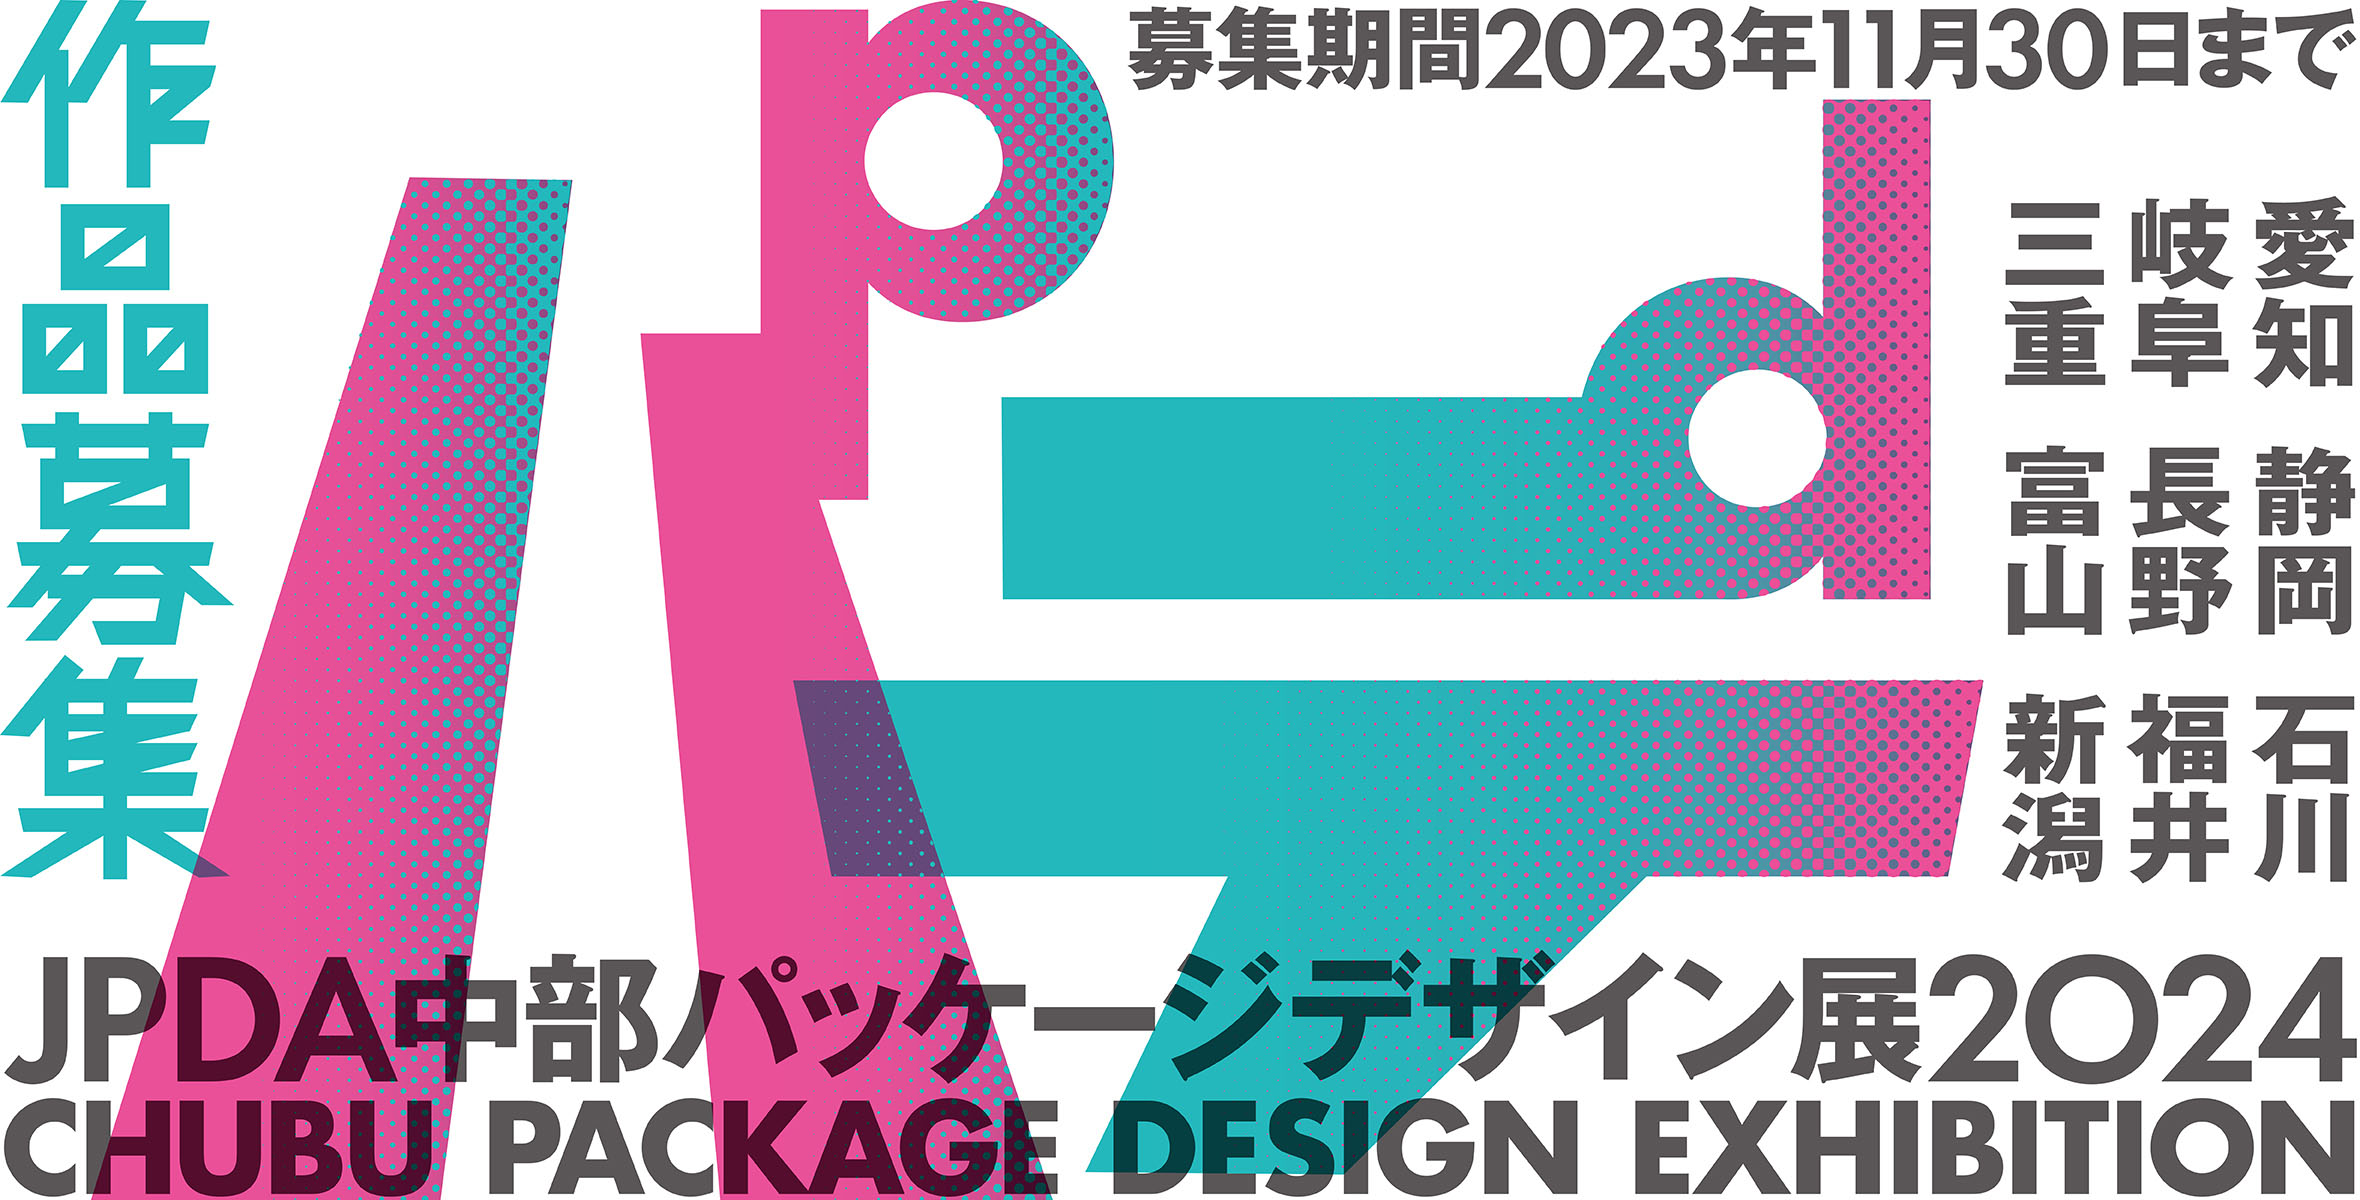 JPDA中部パッケージデザイン展2024【参加者募集】のイメージ